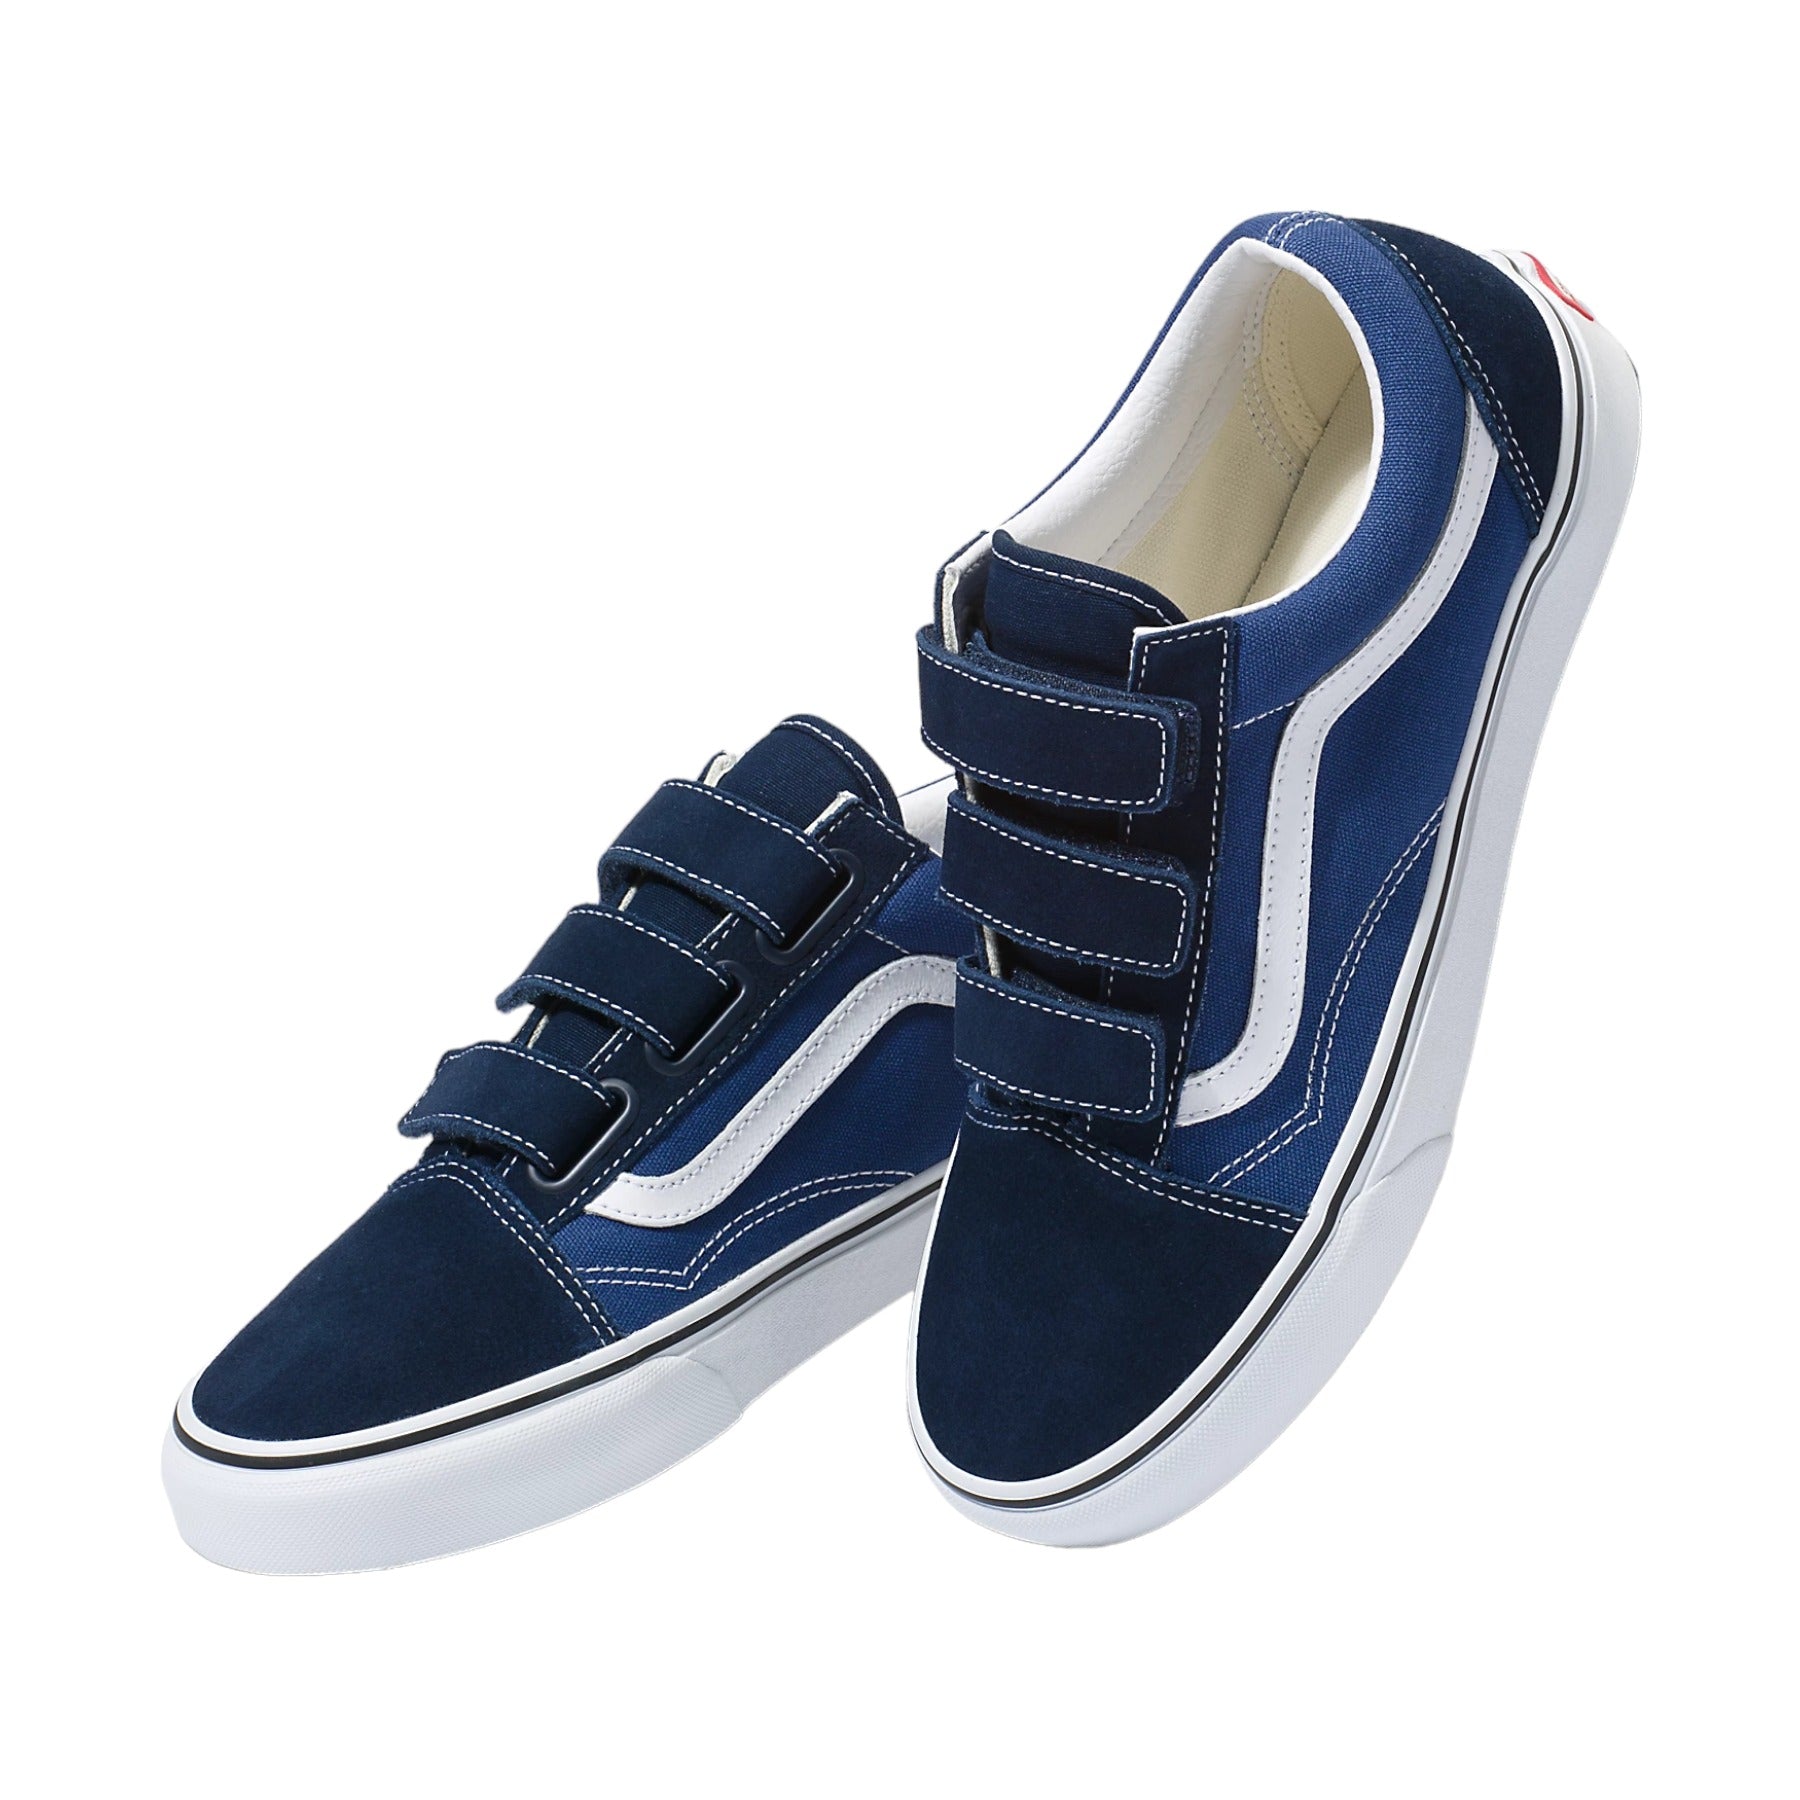 Vans Old Skool Velcro Shoes - Dress Blue/White